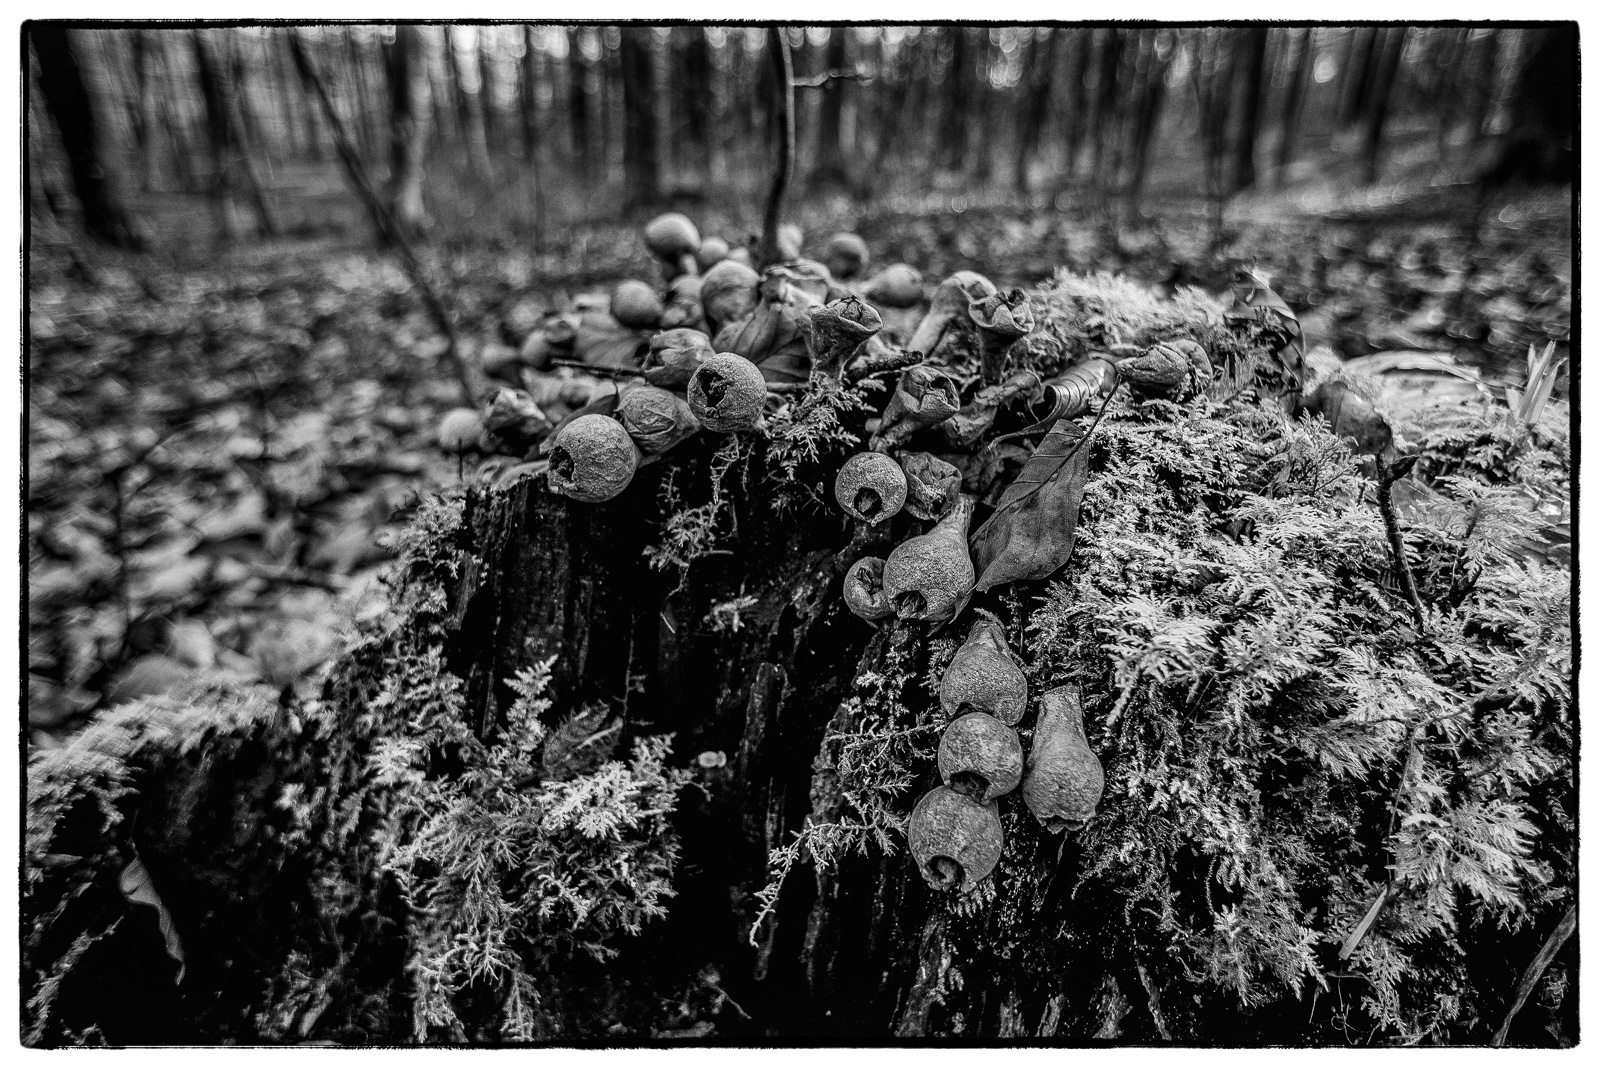 Schwarzweißfoto im Wald: Nahaufnahme eines stark bemoosten Baumstumpfs, auf dem röhren- bzw. keulenförmige Pilze wachsen.